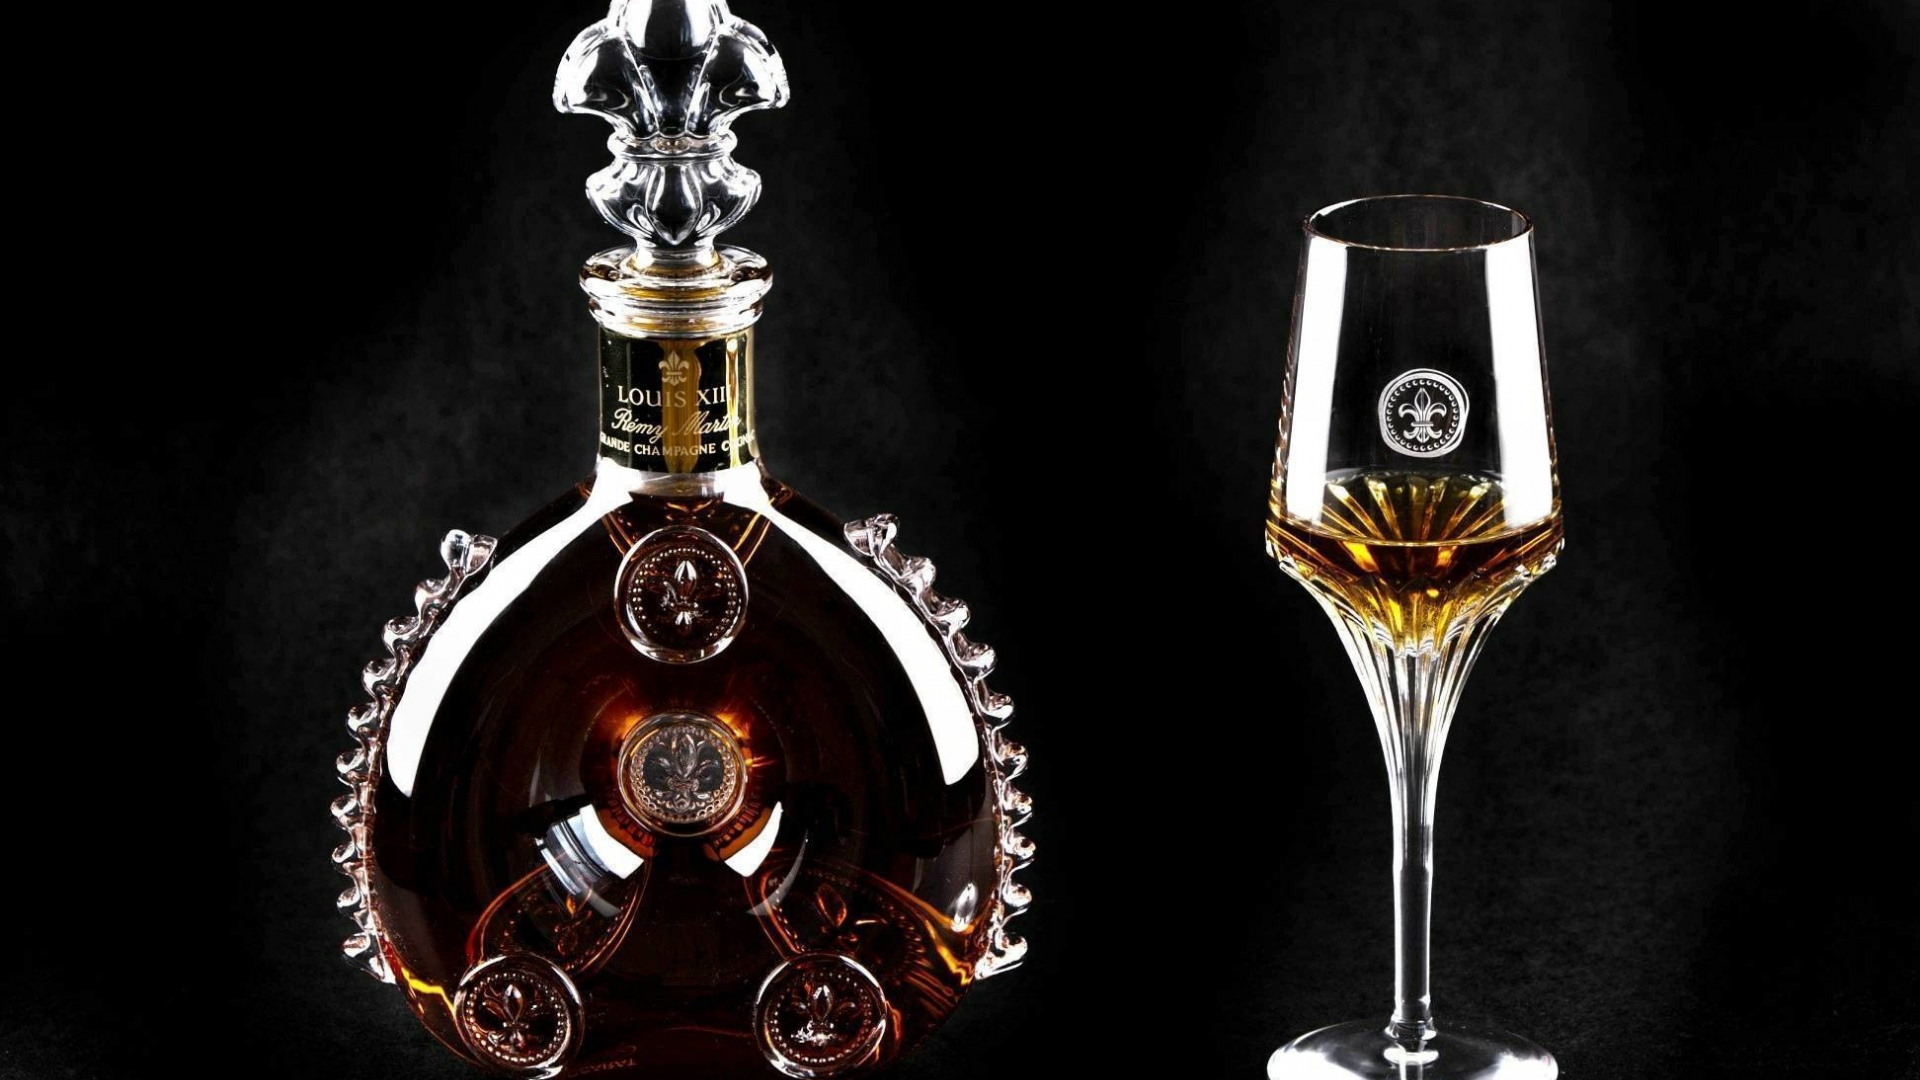 alcohol, cognac, bottle, glass, black background